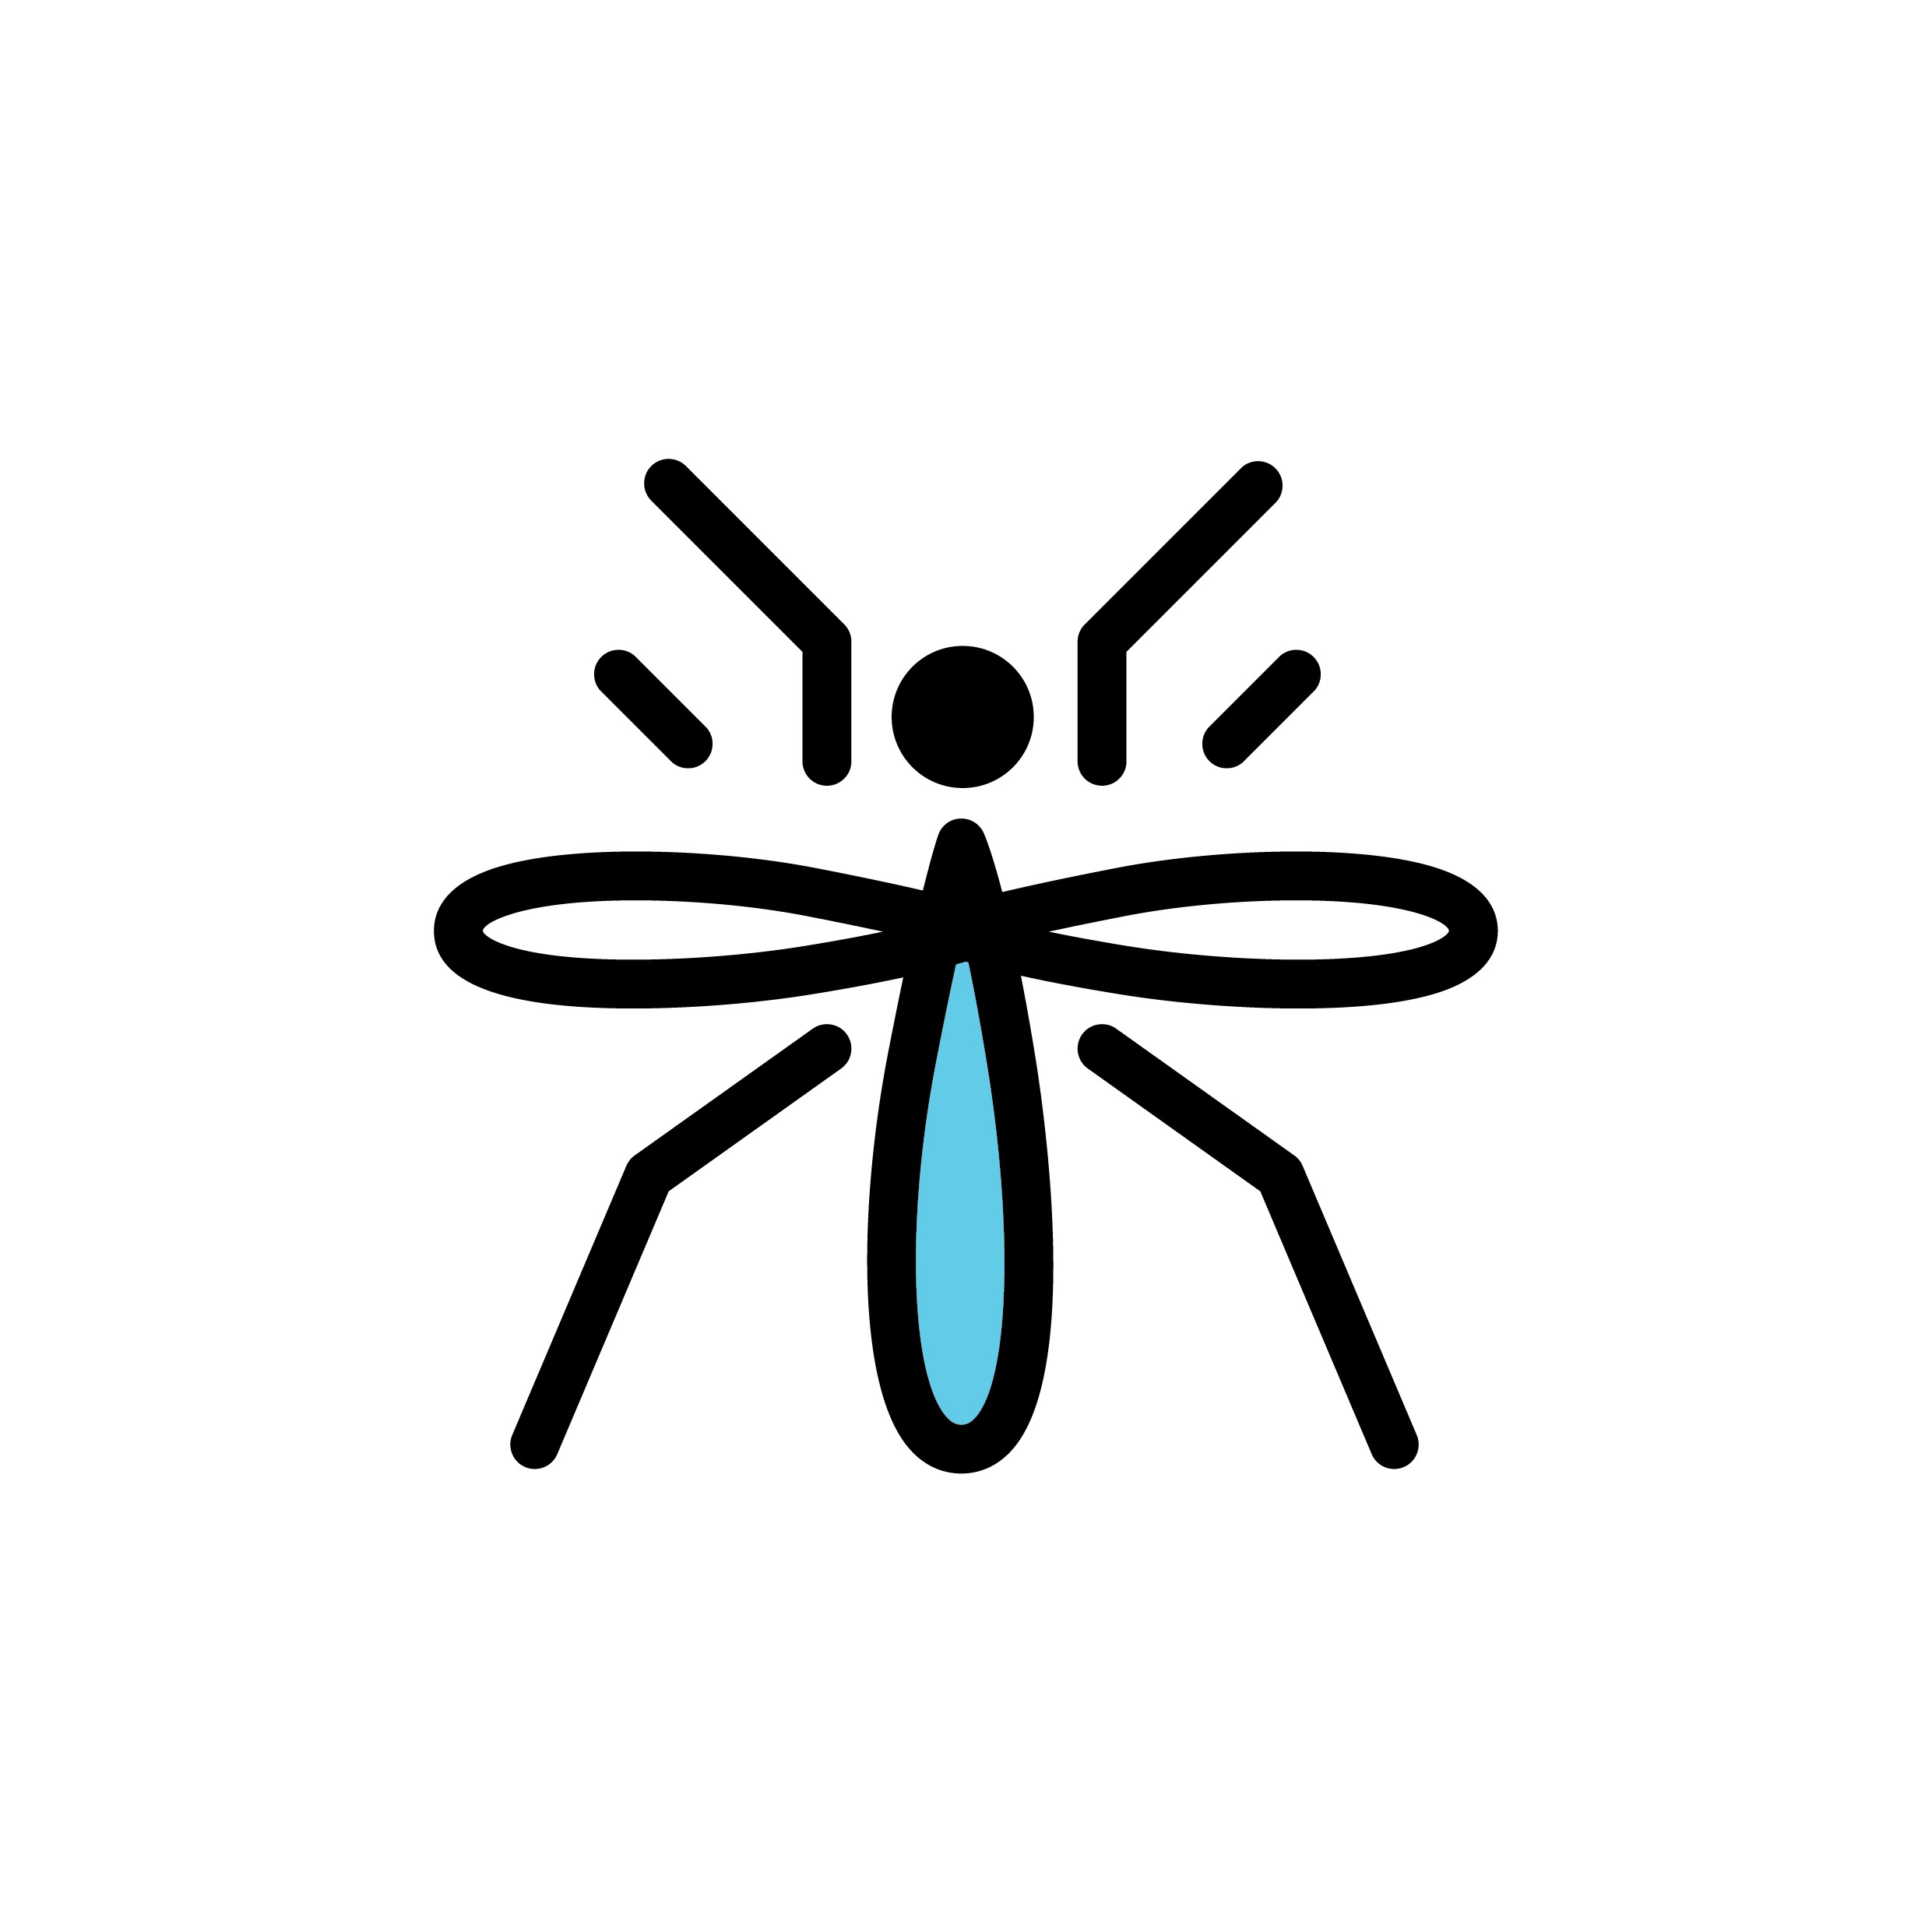 רשת שקופה – אין יותר יתושים אחת ולתמיד